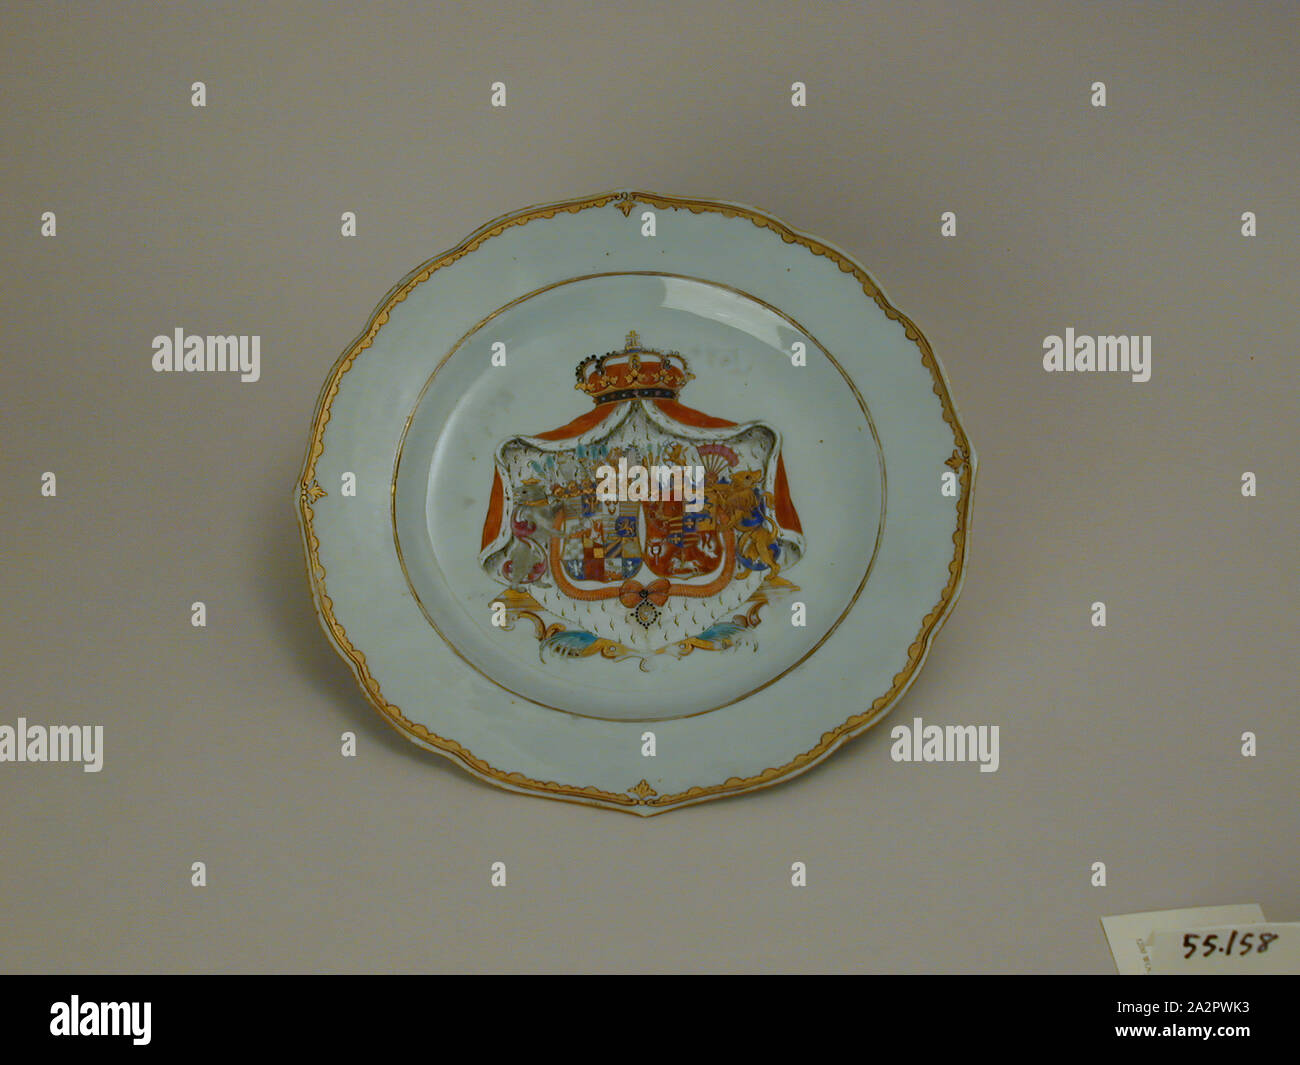 Inconnu (Chinois), la plaque, fin du xviiie siècle, émaillée porcelaine pâte dure avec émail polychrome et dorure, Hauteur x diamètre : 1 x 9 1/4 in. (2,5 x 23,5 cm Banque D'Images